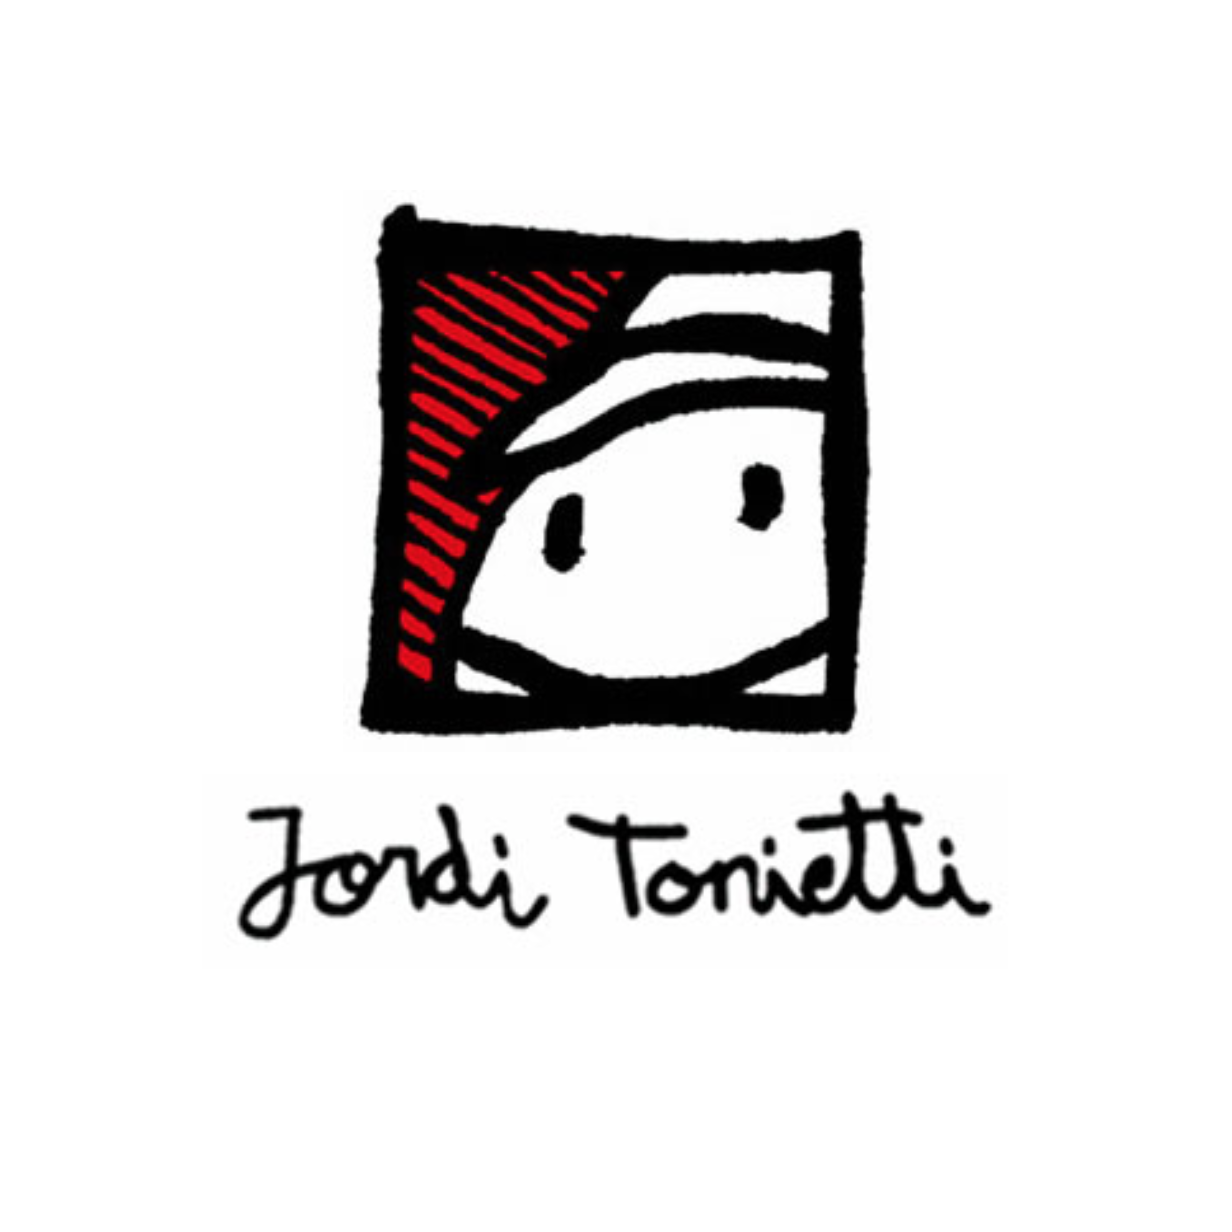 Jordi Tonietti